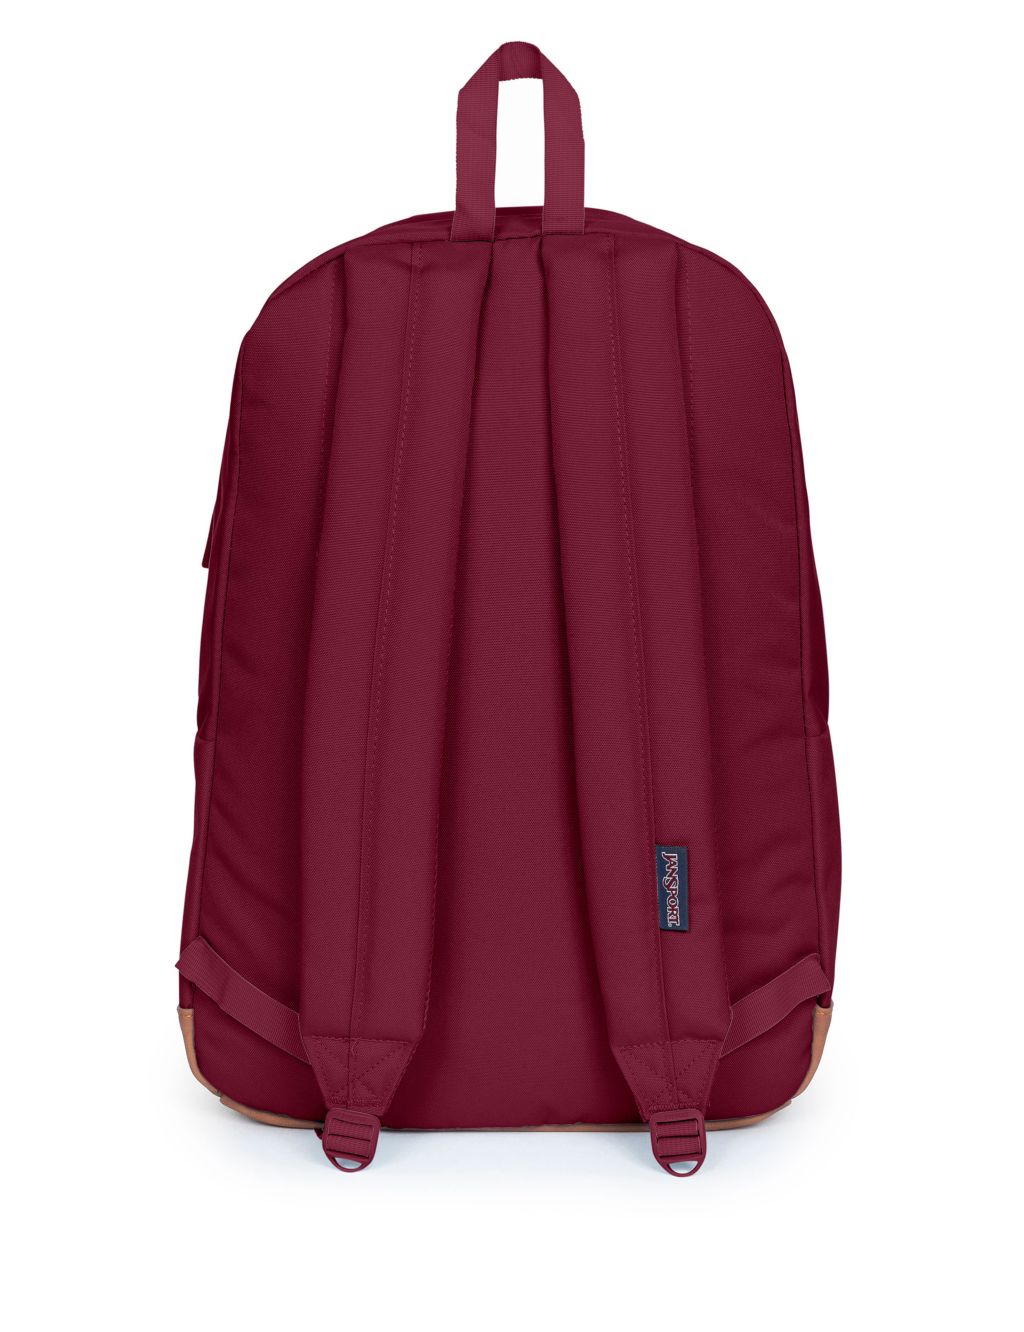 Cortlandt Multi Pocket Backpack image 4